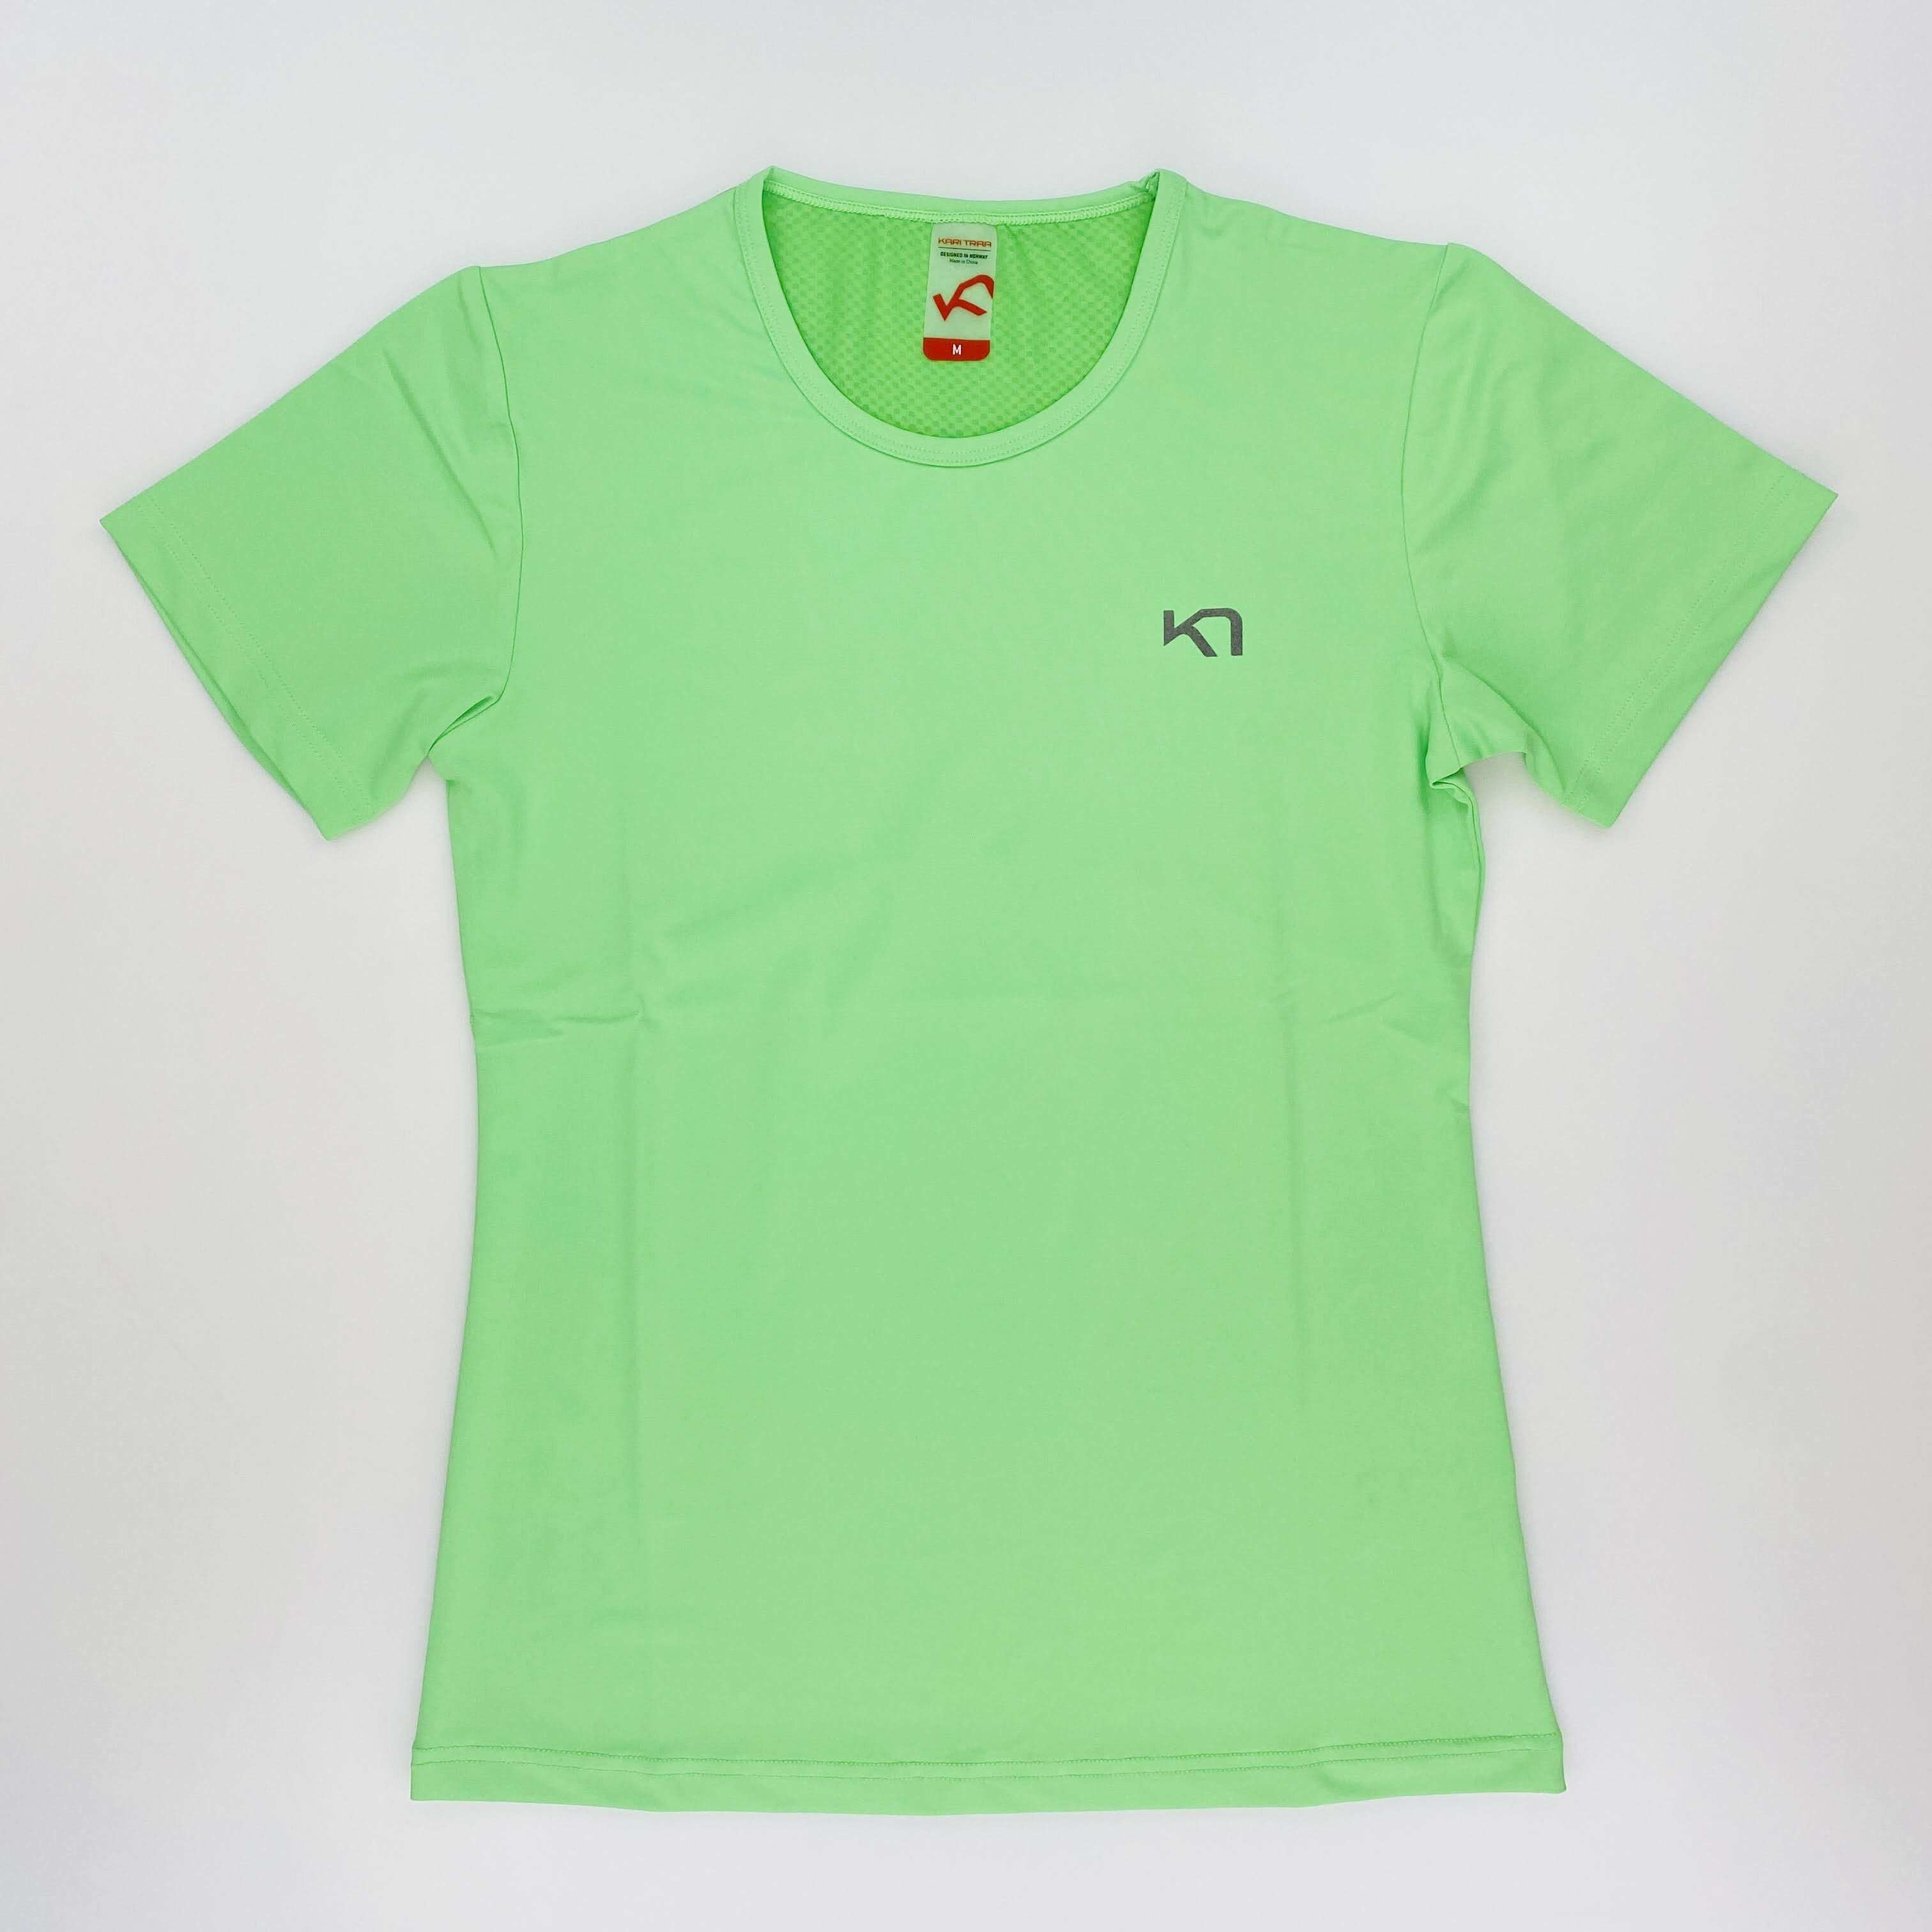 Kari Traa Mari Tee - T-shirt di seconda mano - Donna - Verde - M | Hardloop